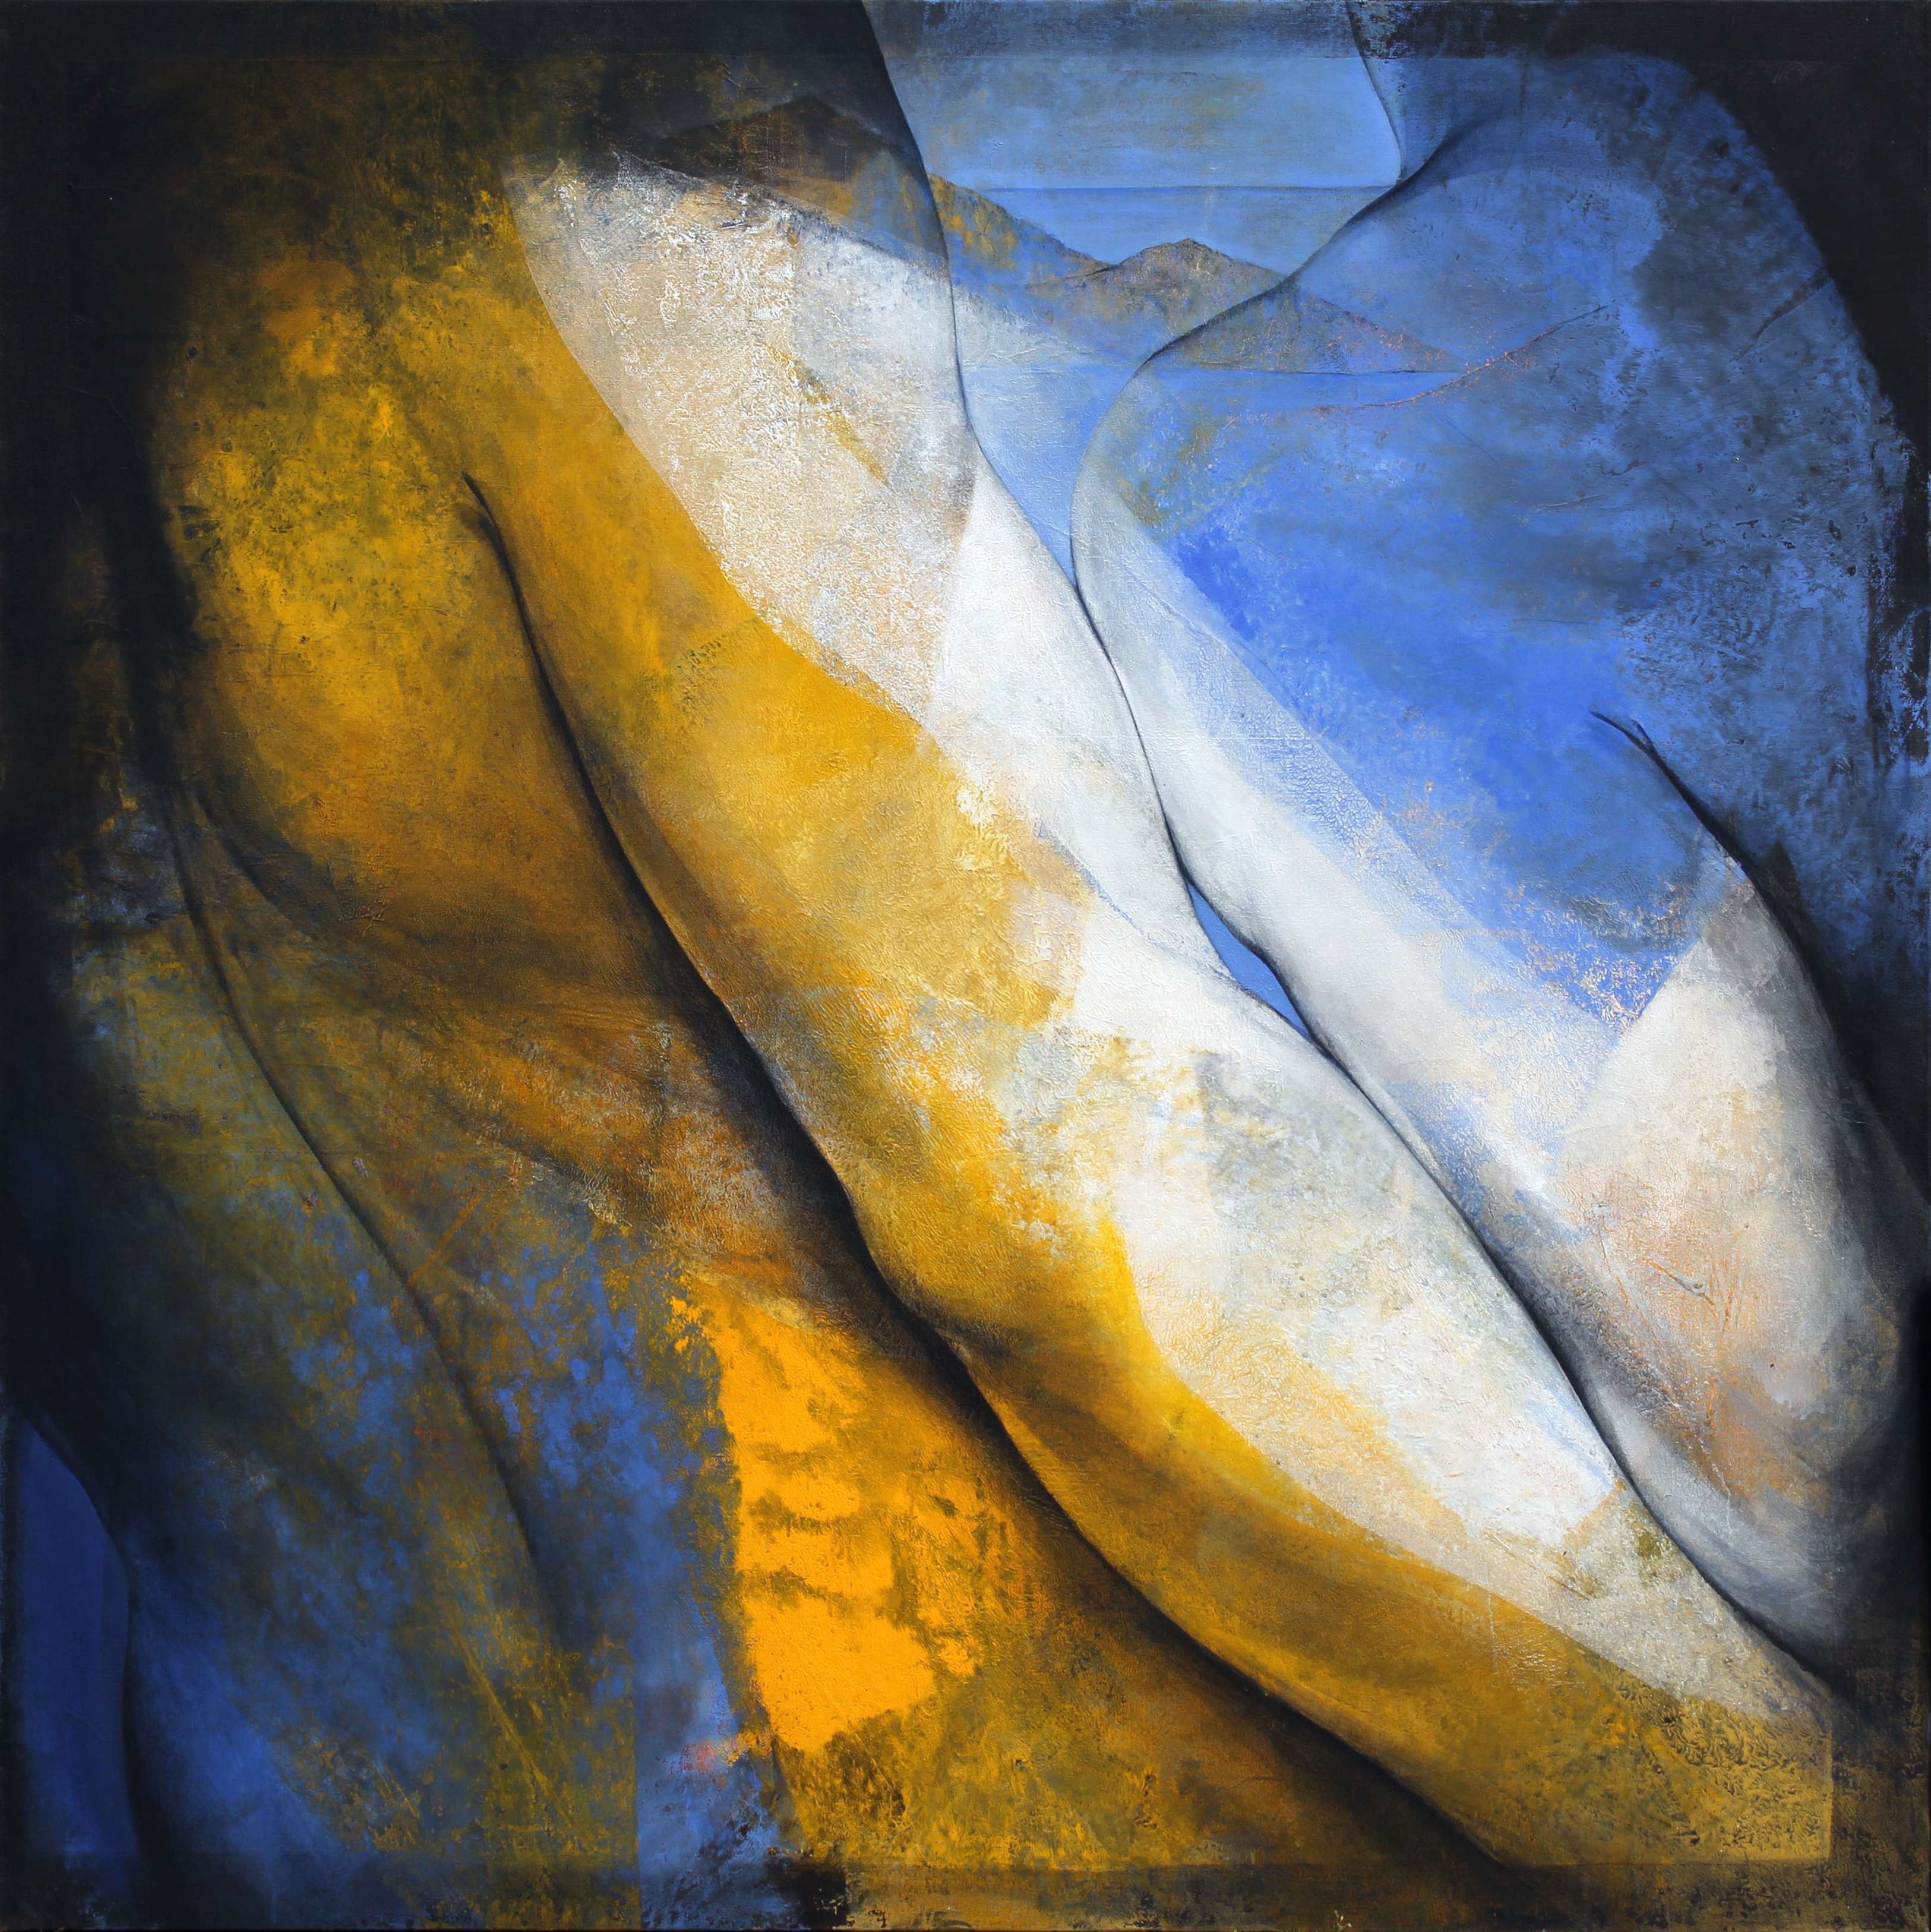 Etienne GROS, l'Approche en bleu,  acrylique sur toile, 180 x 180 cm, 2022, Courtesy Galerie Insula, Paris